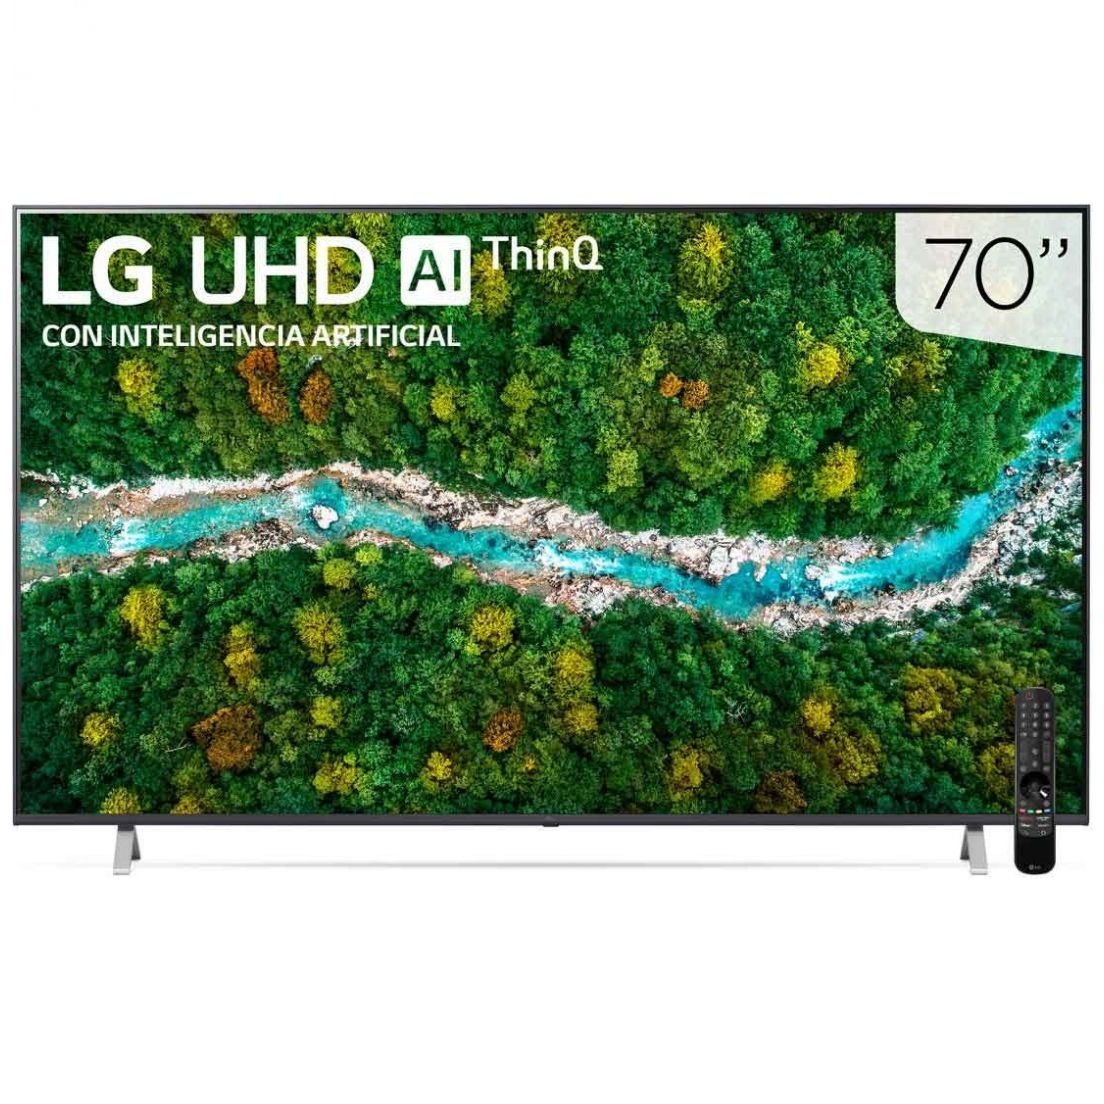 Pantalla LG 70" Uhd Ai Thinq 4K Smart Tv 70Up7750Psb